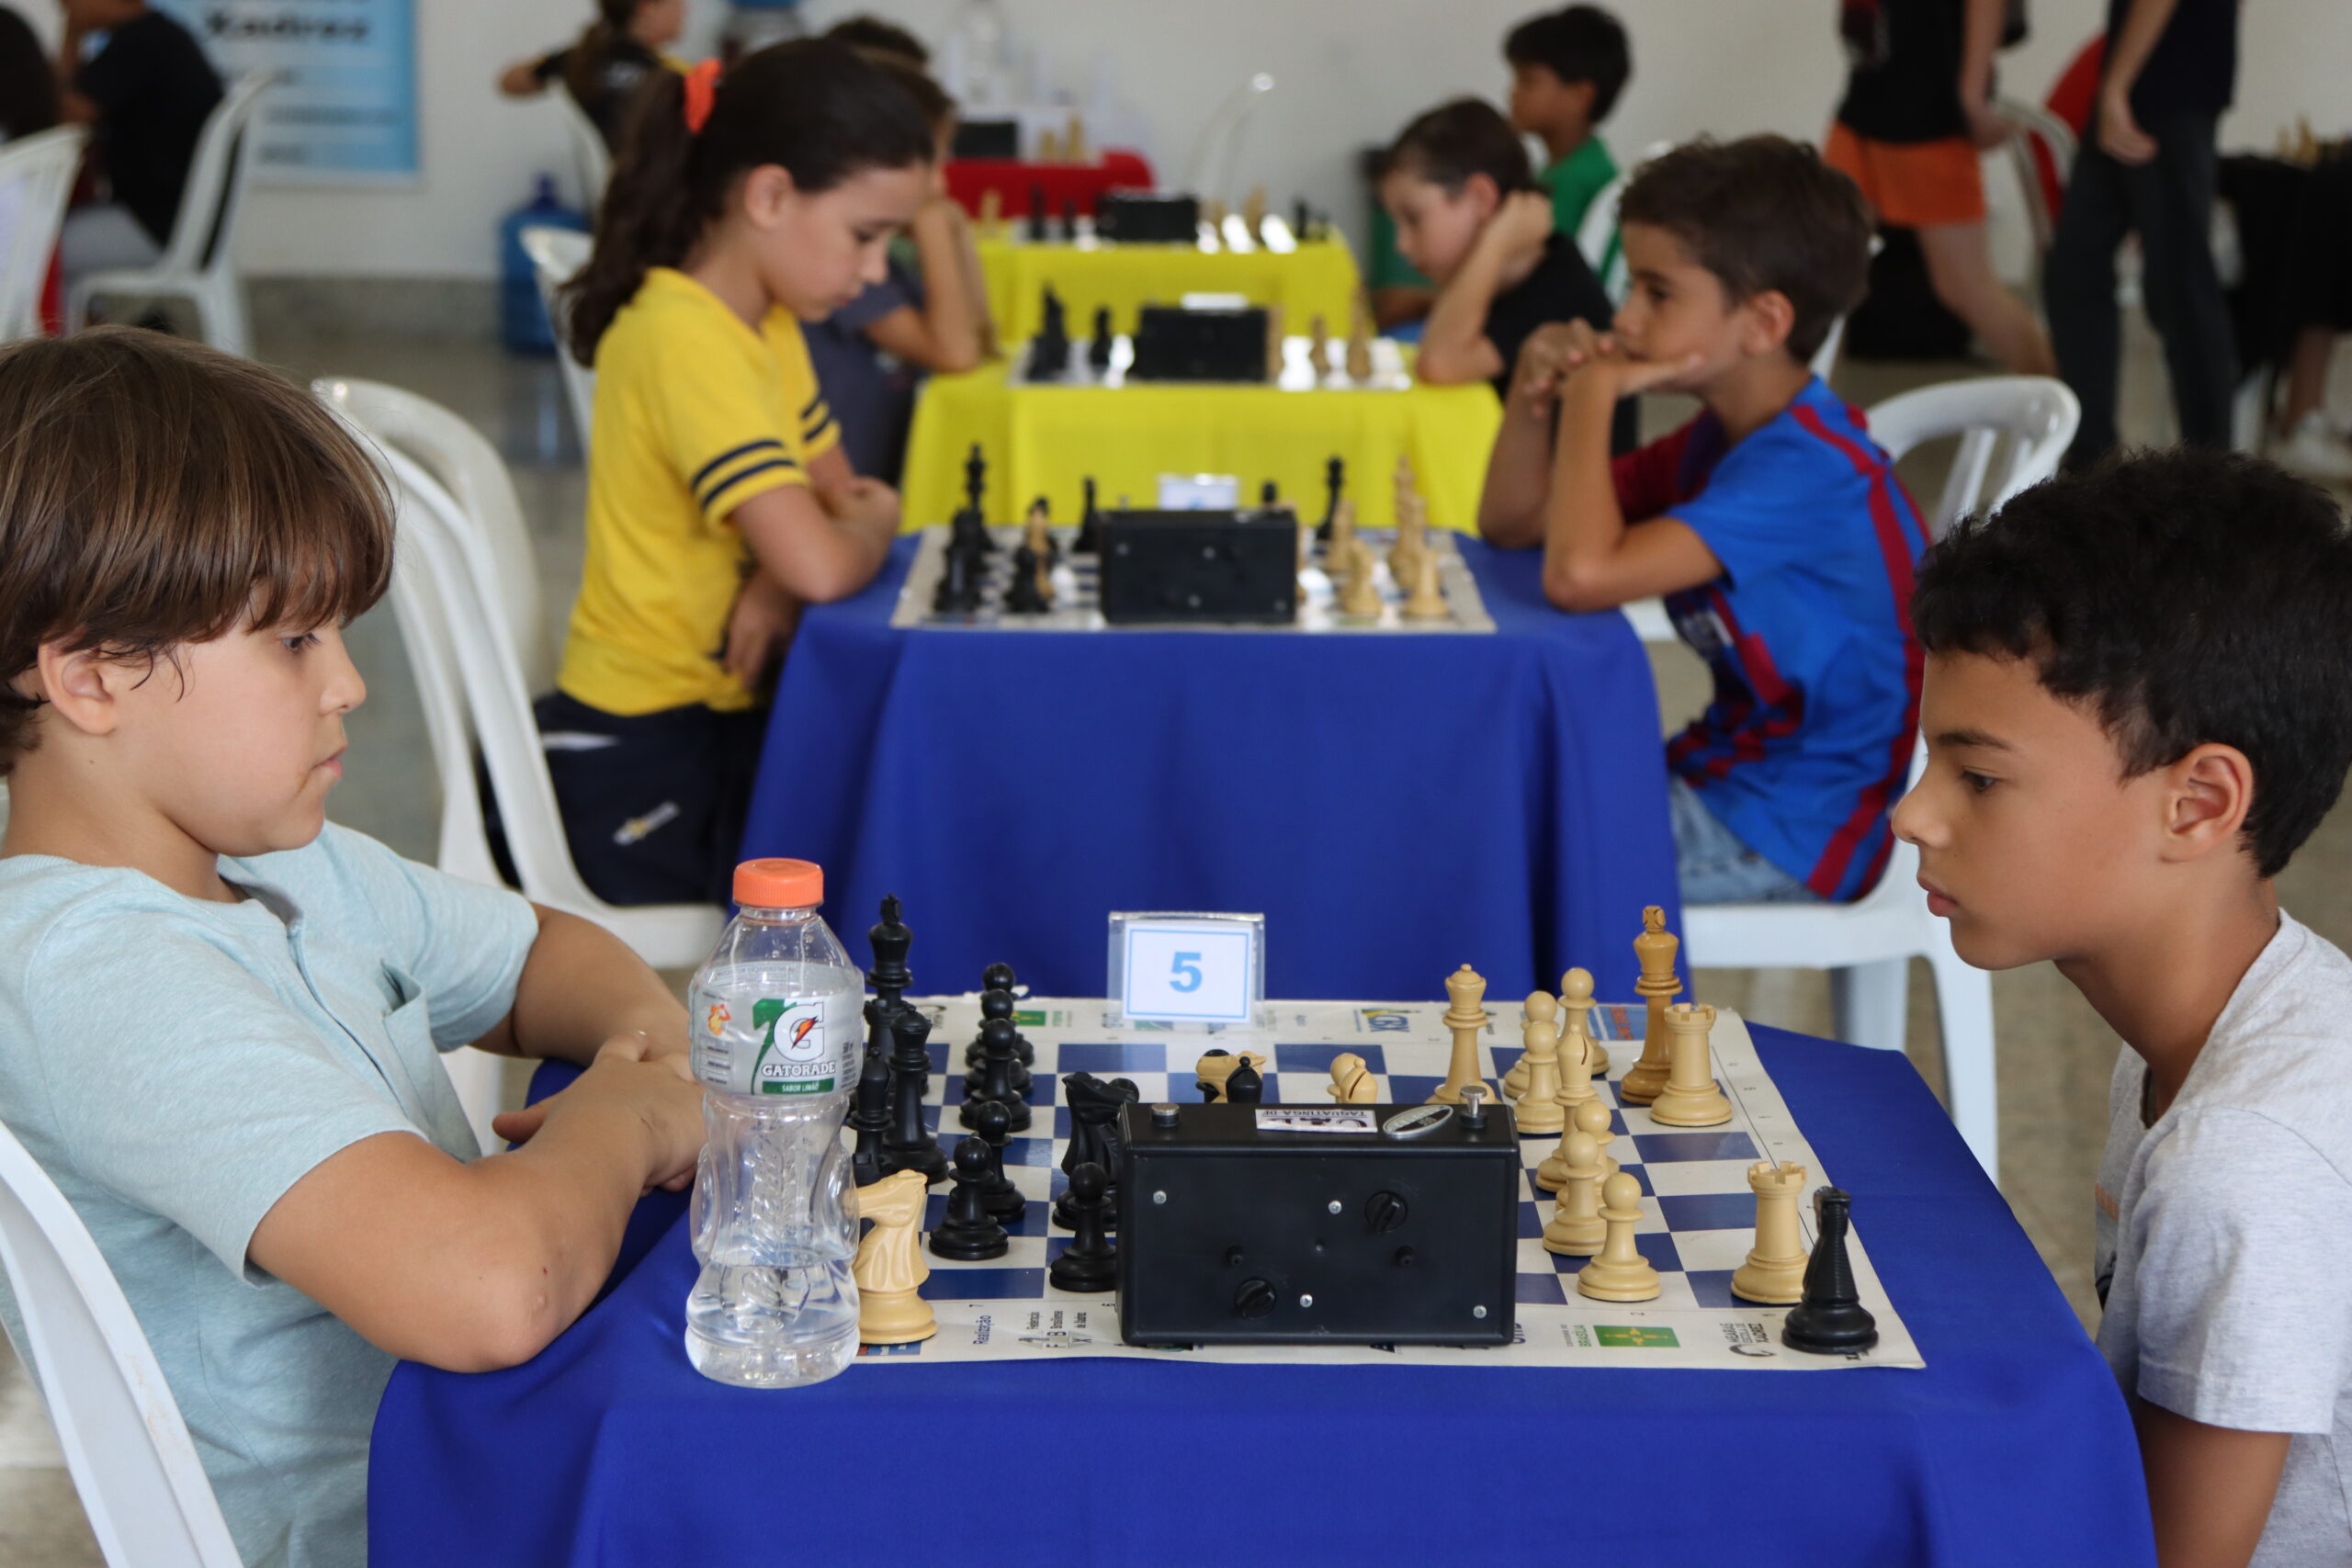 Campeonato Brasiliense de Xadrez da criança e da juventude - FBX -  Federação Brasiliense de Xadrez